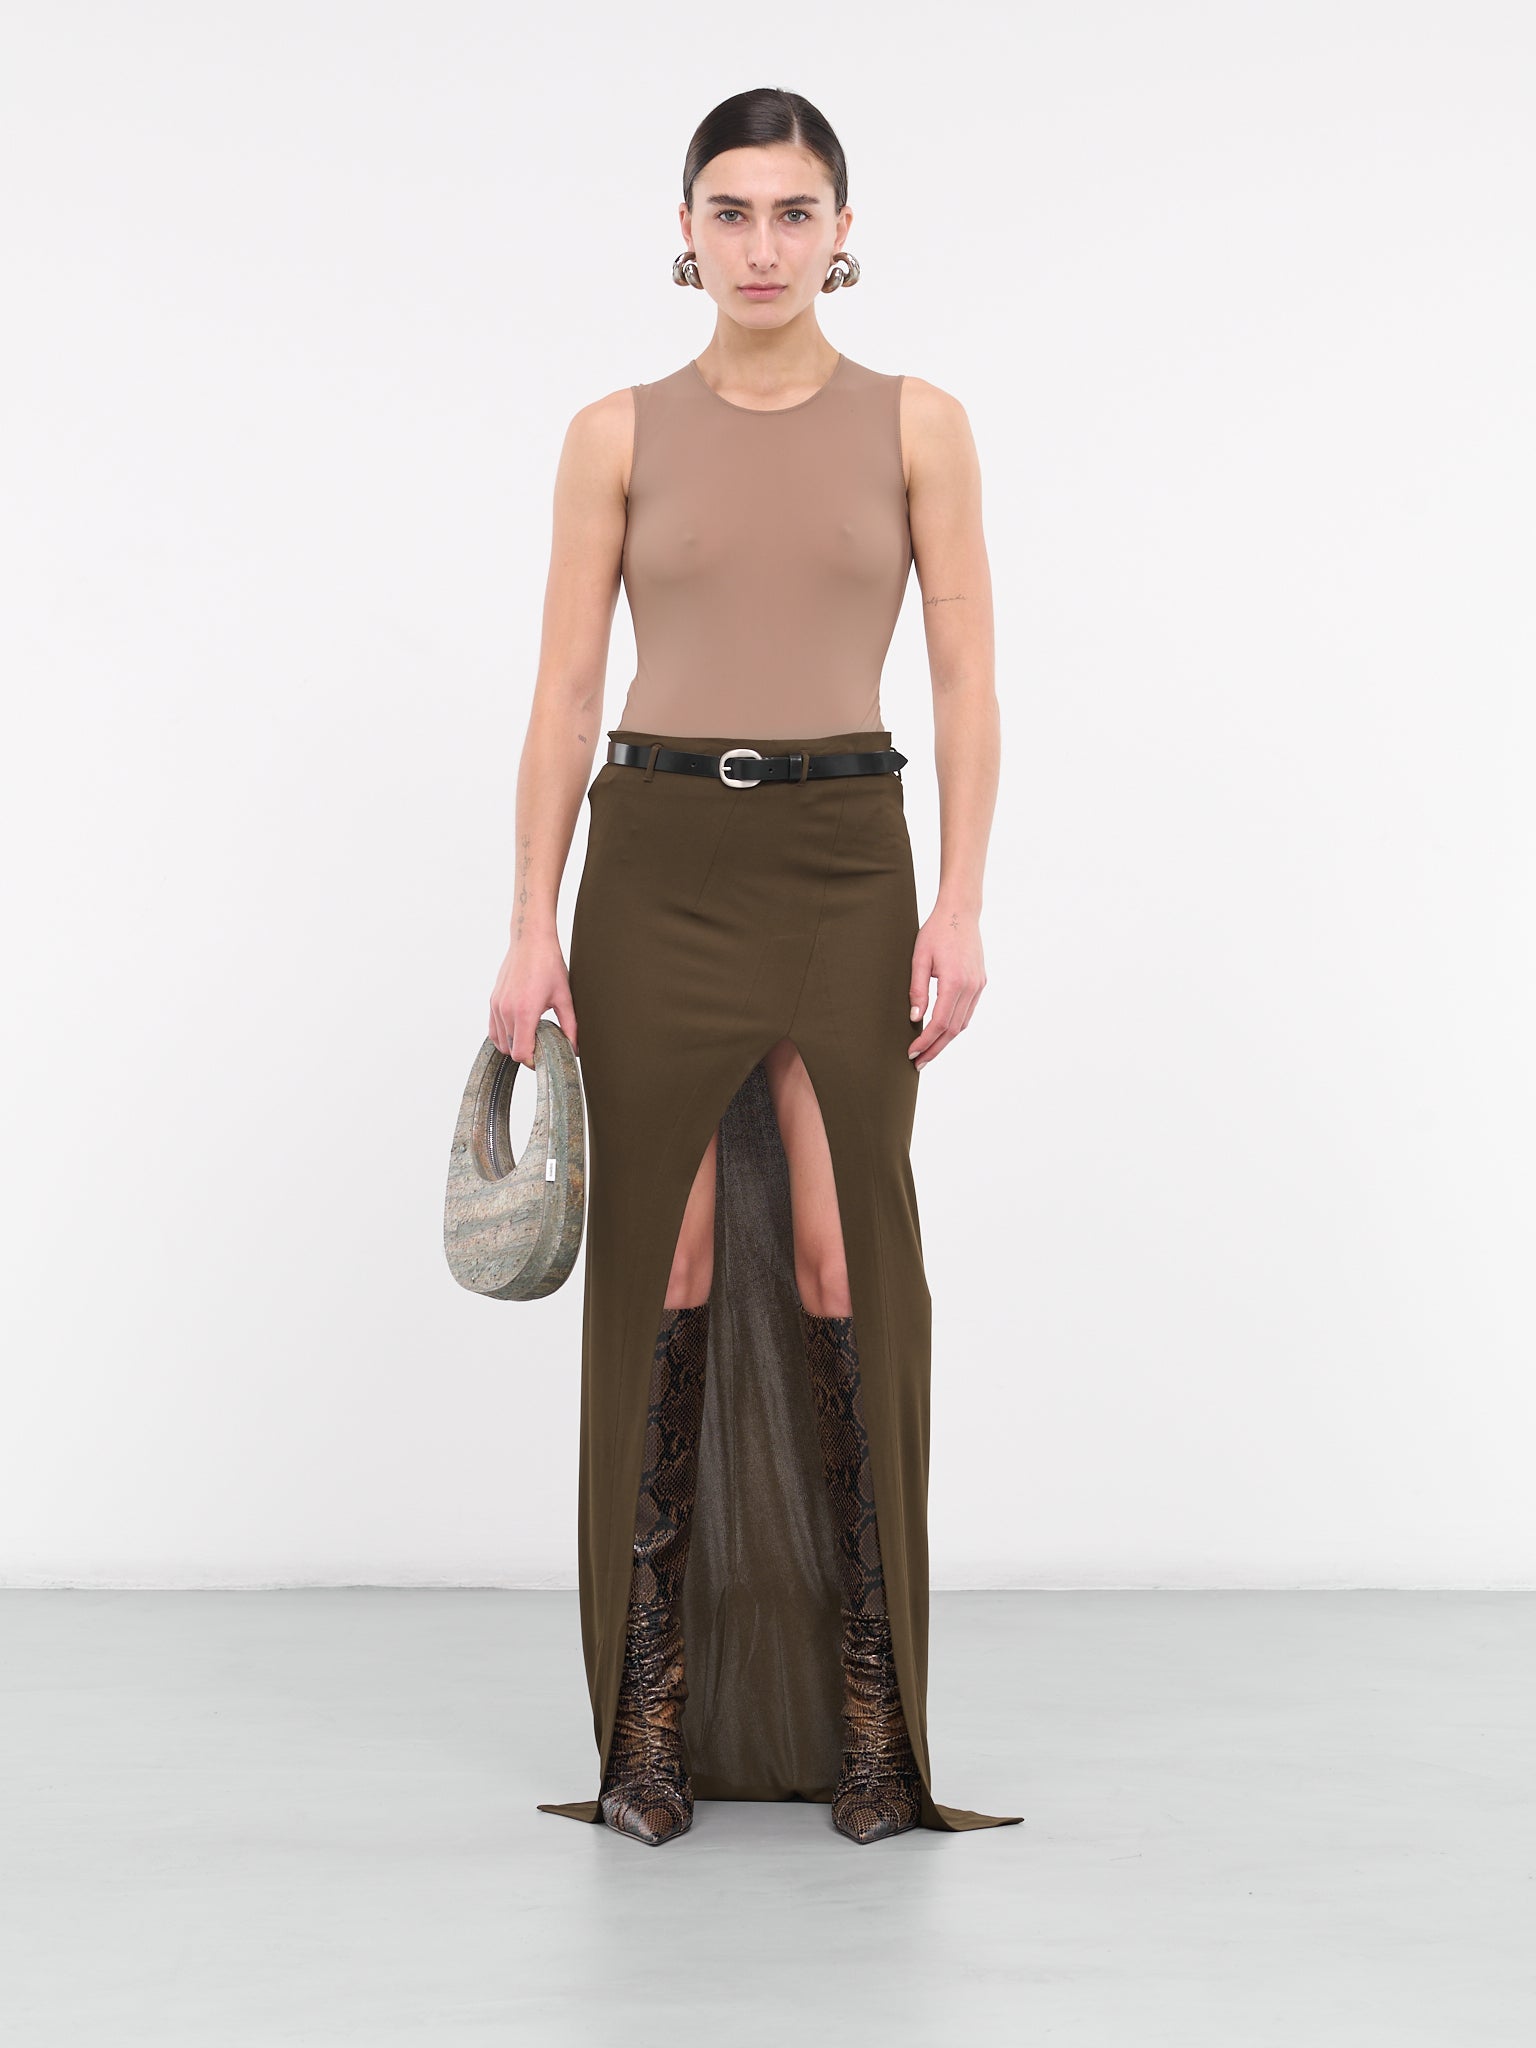 Strangelove Skirt (STRANGELOVE-R1-UMBER)